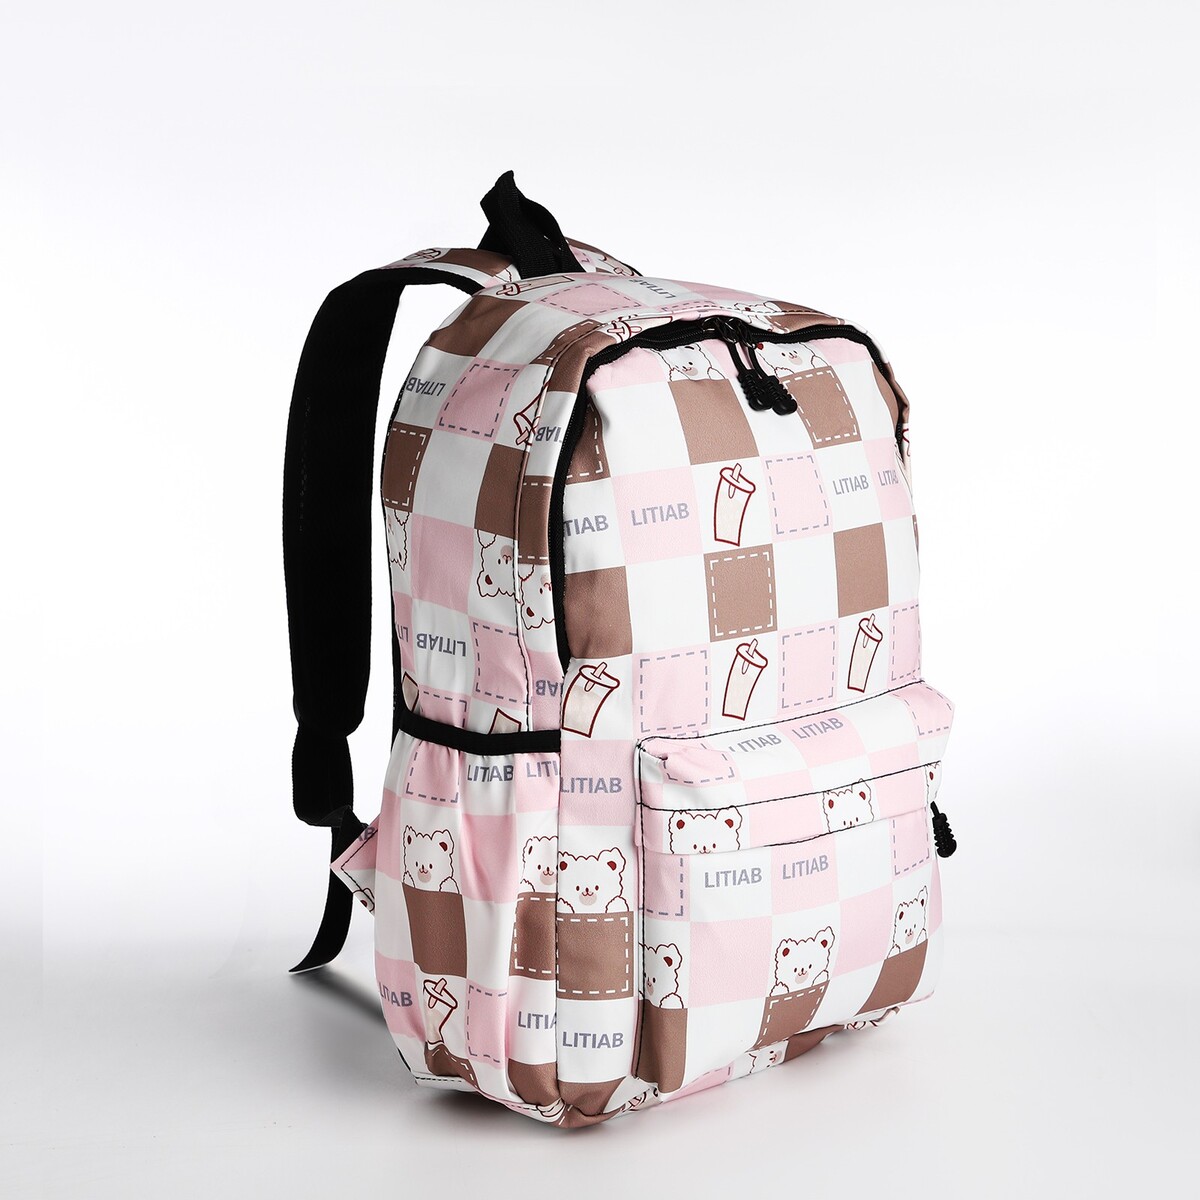 Рюкзак молодежный из текстиля, 3 кармана, цвет бежевый/розовый